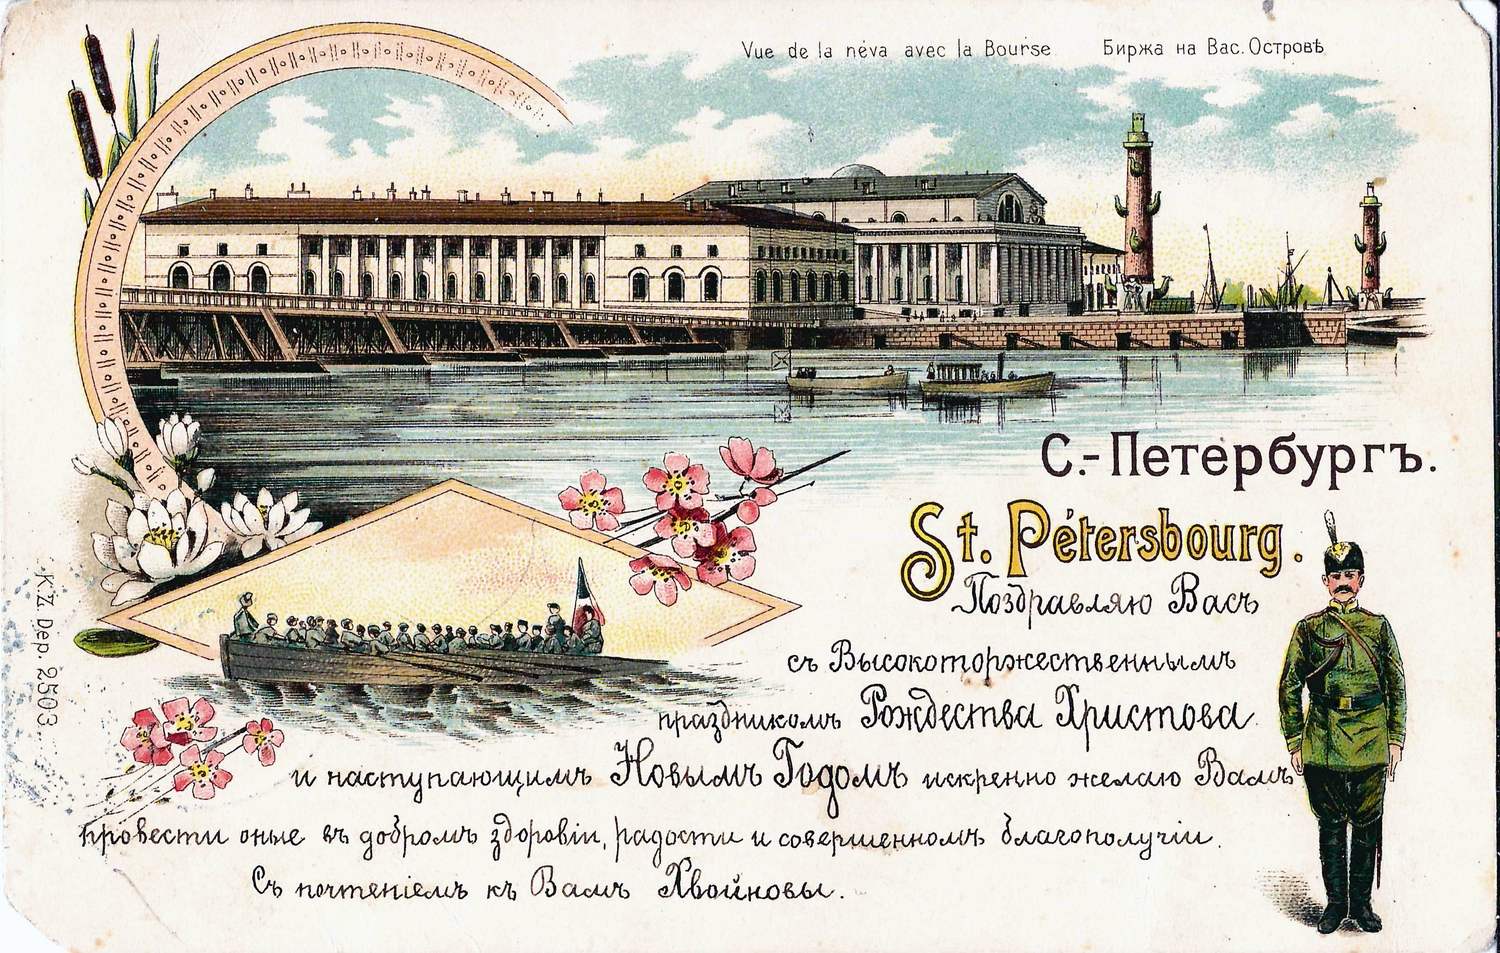 Санкт-Петербург. Открытка («грюсс») «Биржа на Васильевском острове». 1900.